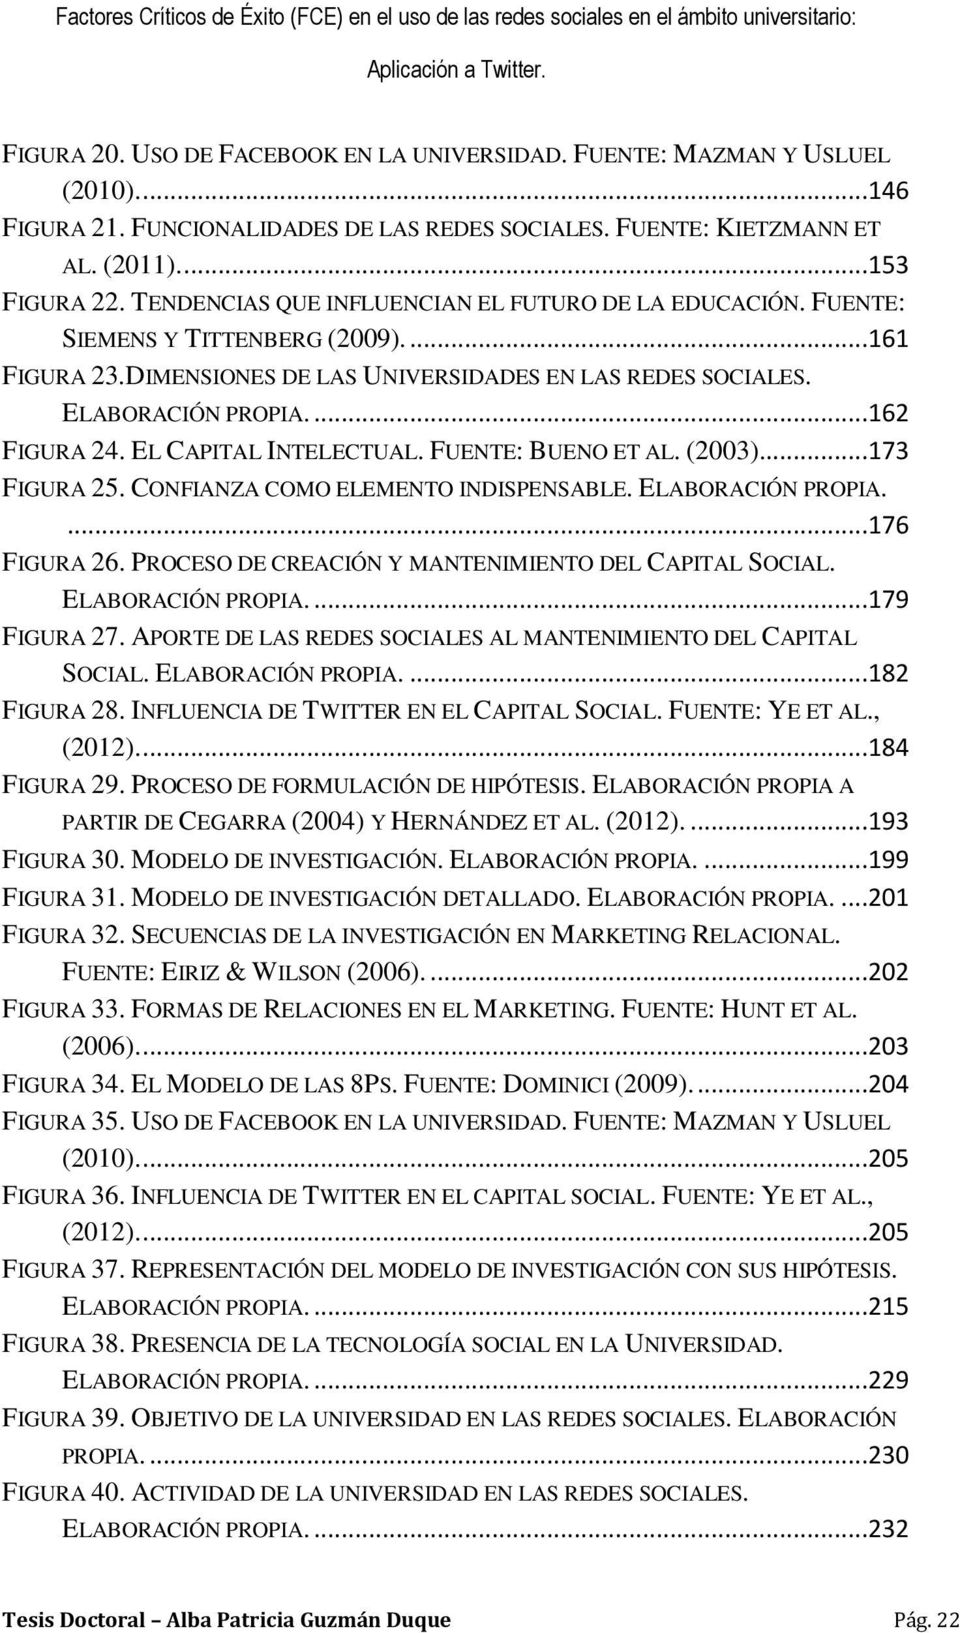 EL CAPITAL INTELECTUAL. FUENTE: BUENO ET AL. (2003)...173 FIGURA 25. CONFIANZA COMO ELEMENTO INDISPENSABLE. ELABORACIÓN PROPIA....176 FIGURA 26. PROCESO DE CREACIÓN Y MANTENIMIENTO DEL CAPITAL SOCIAL.